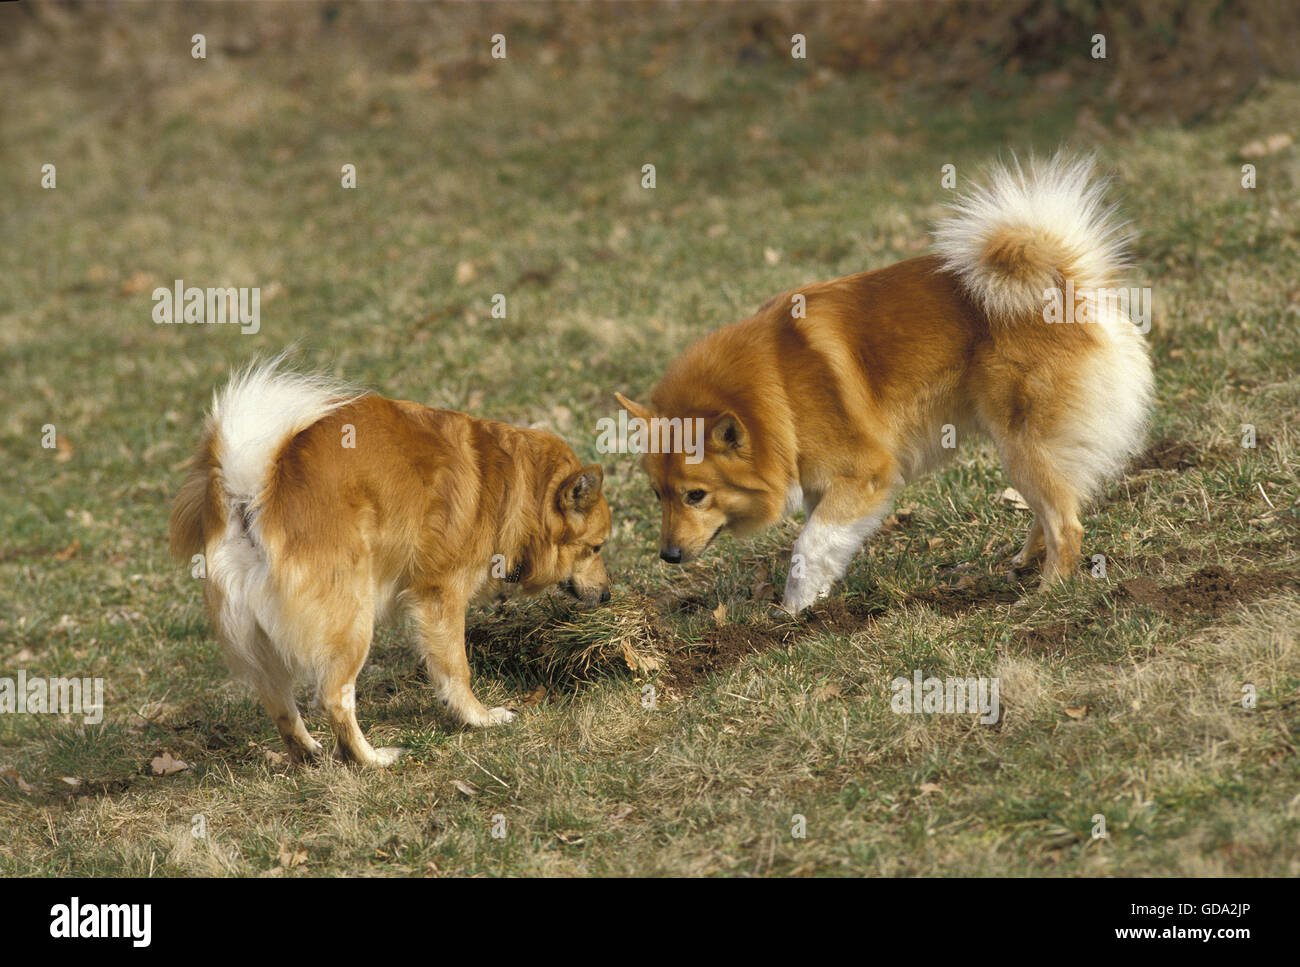 Iceland Dog or Icelandic Sheepdog on Grass Stock Photo